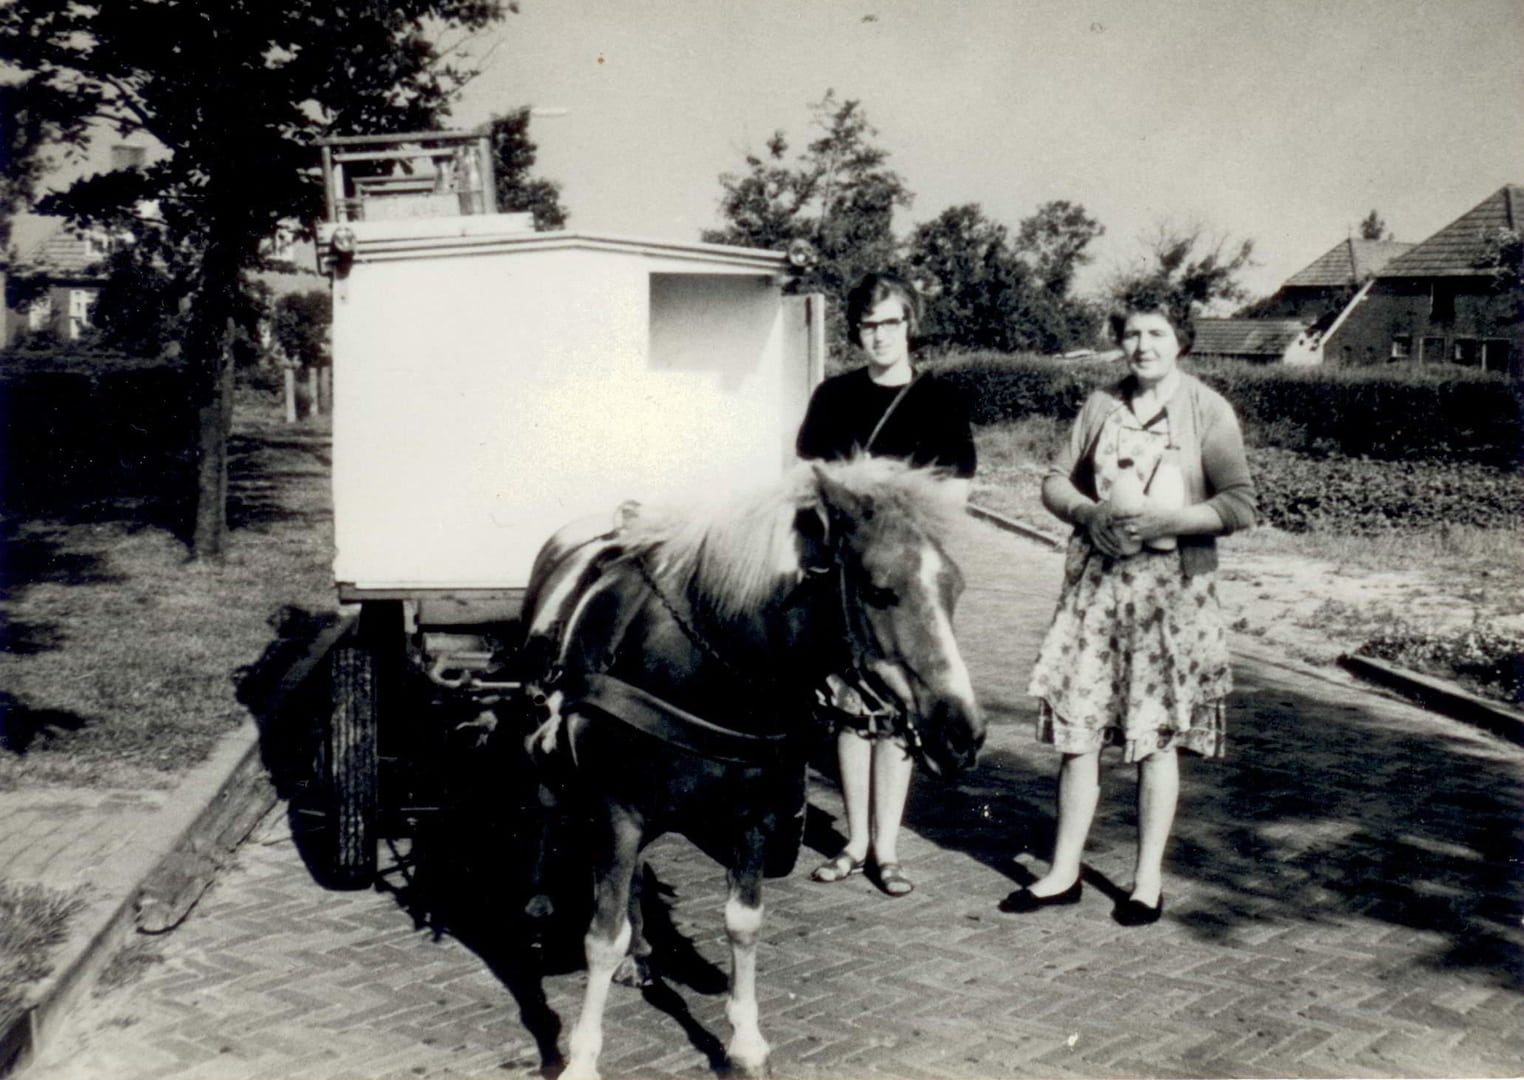 Diena Pepping en haar moeder, Jantien Pepping-Ratering bij de melkkar van de zuivelfabriek in 1960.